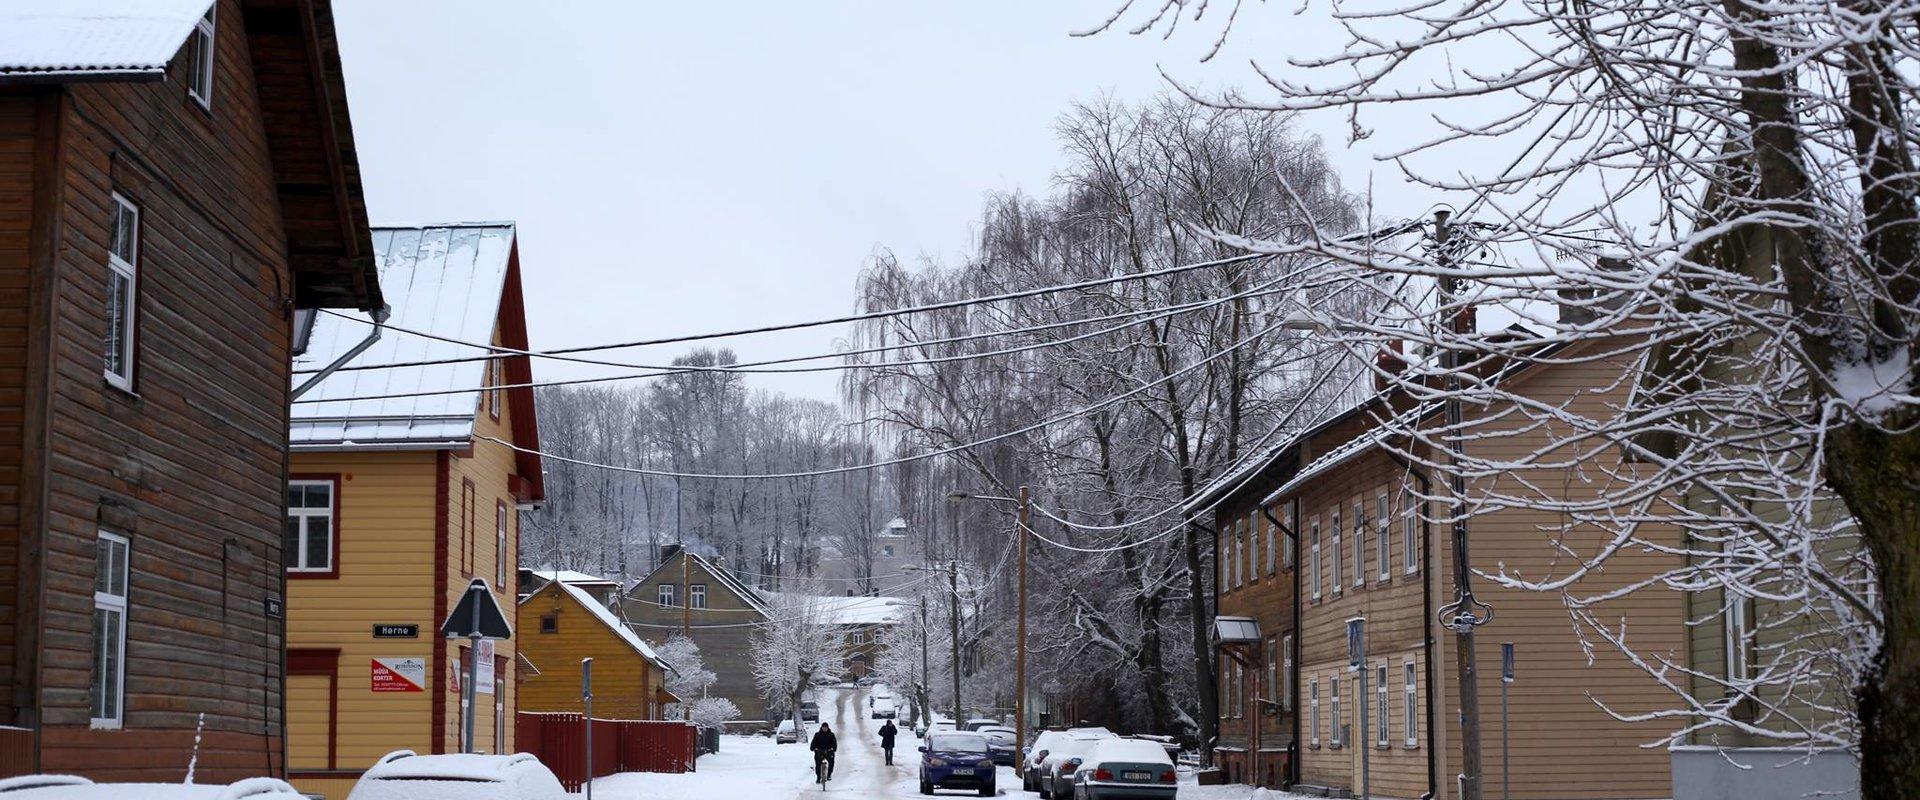 Supilinn - miljööväärtuslik puitlinn lumisel talvel